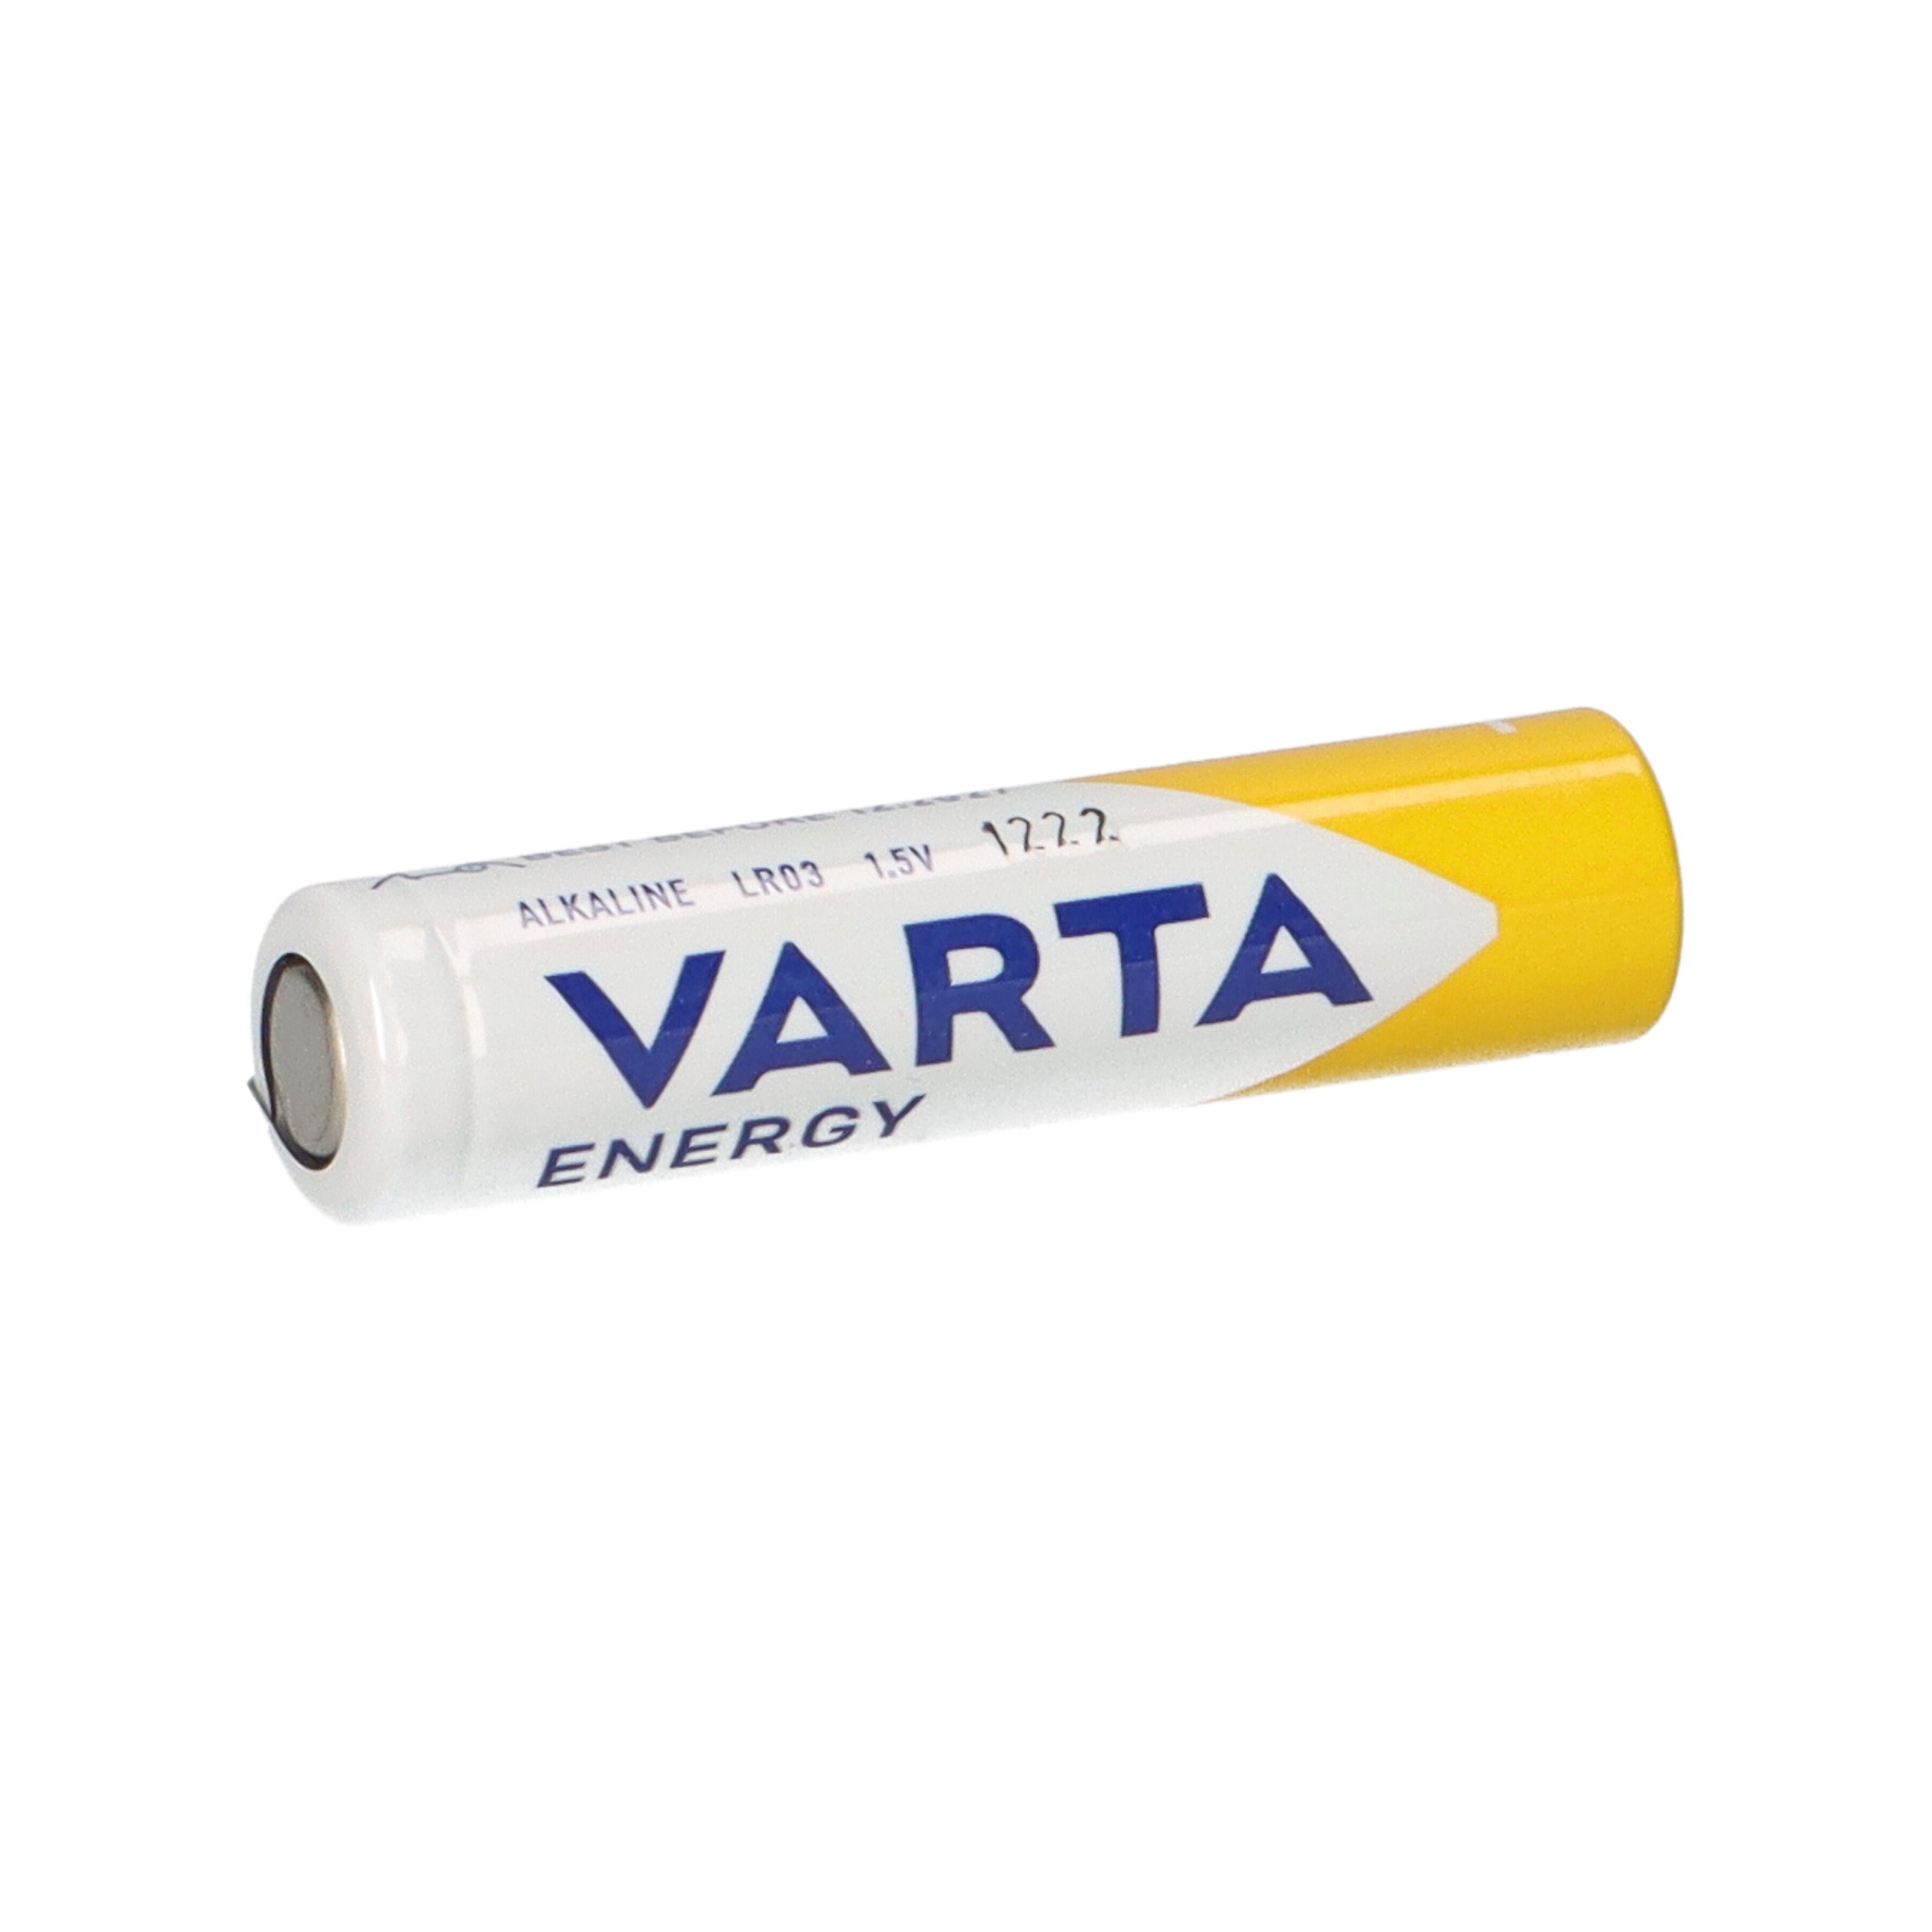 Varta Batterie 1,5V VARTA 4er Batterie 40x im AAA AlMn Micro Blister Energy